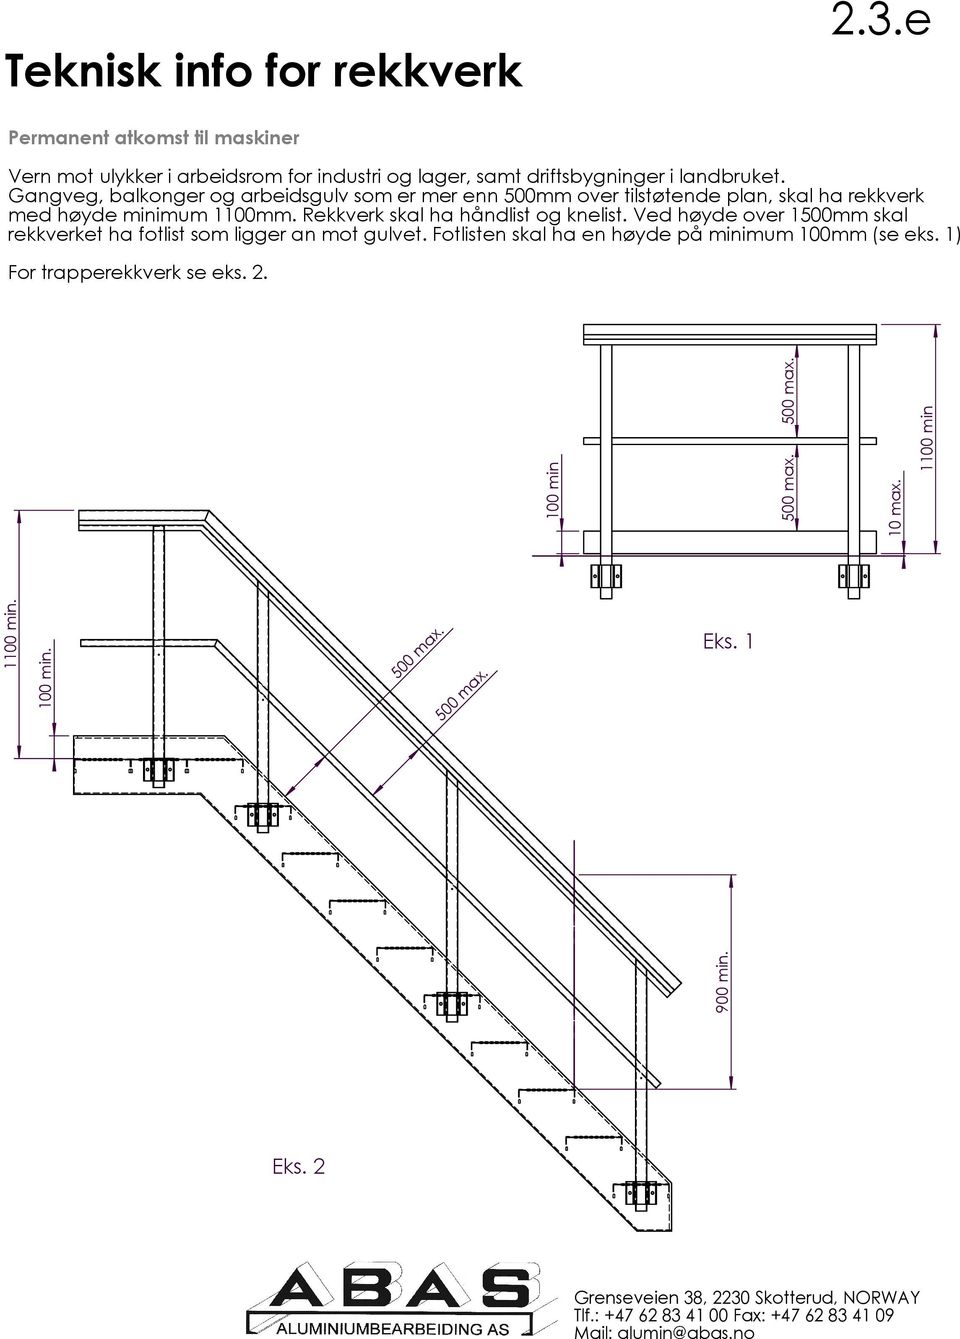 Gangveg, balkonger og arbeidsgulv som er mer enn 500mm over tilstøtende plan, skal ha rekkverk med høyde minimum 1100mm.